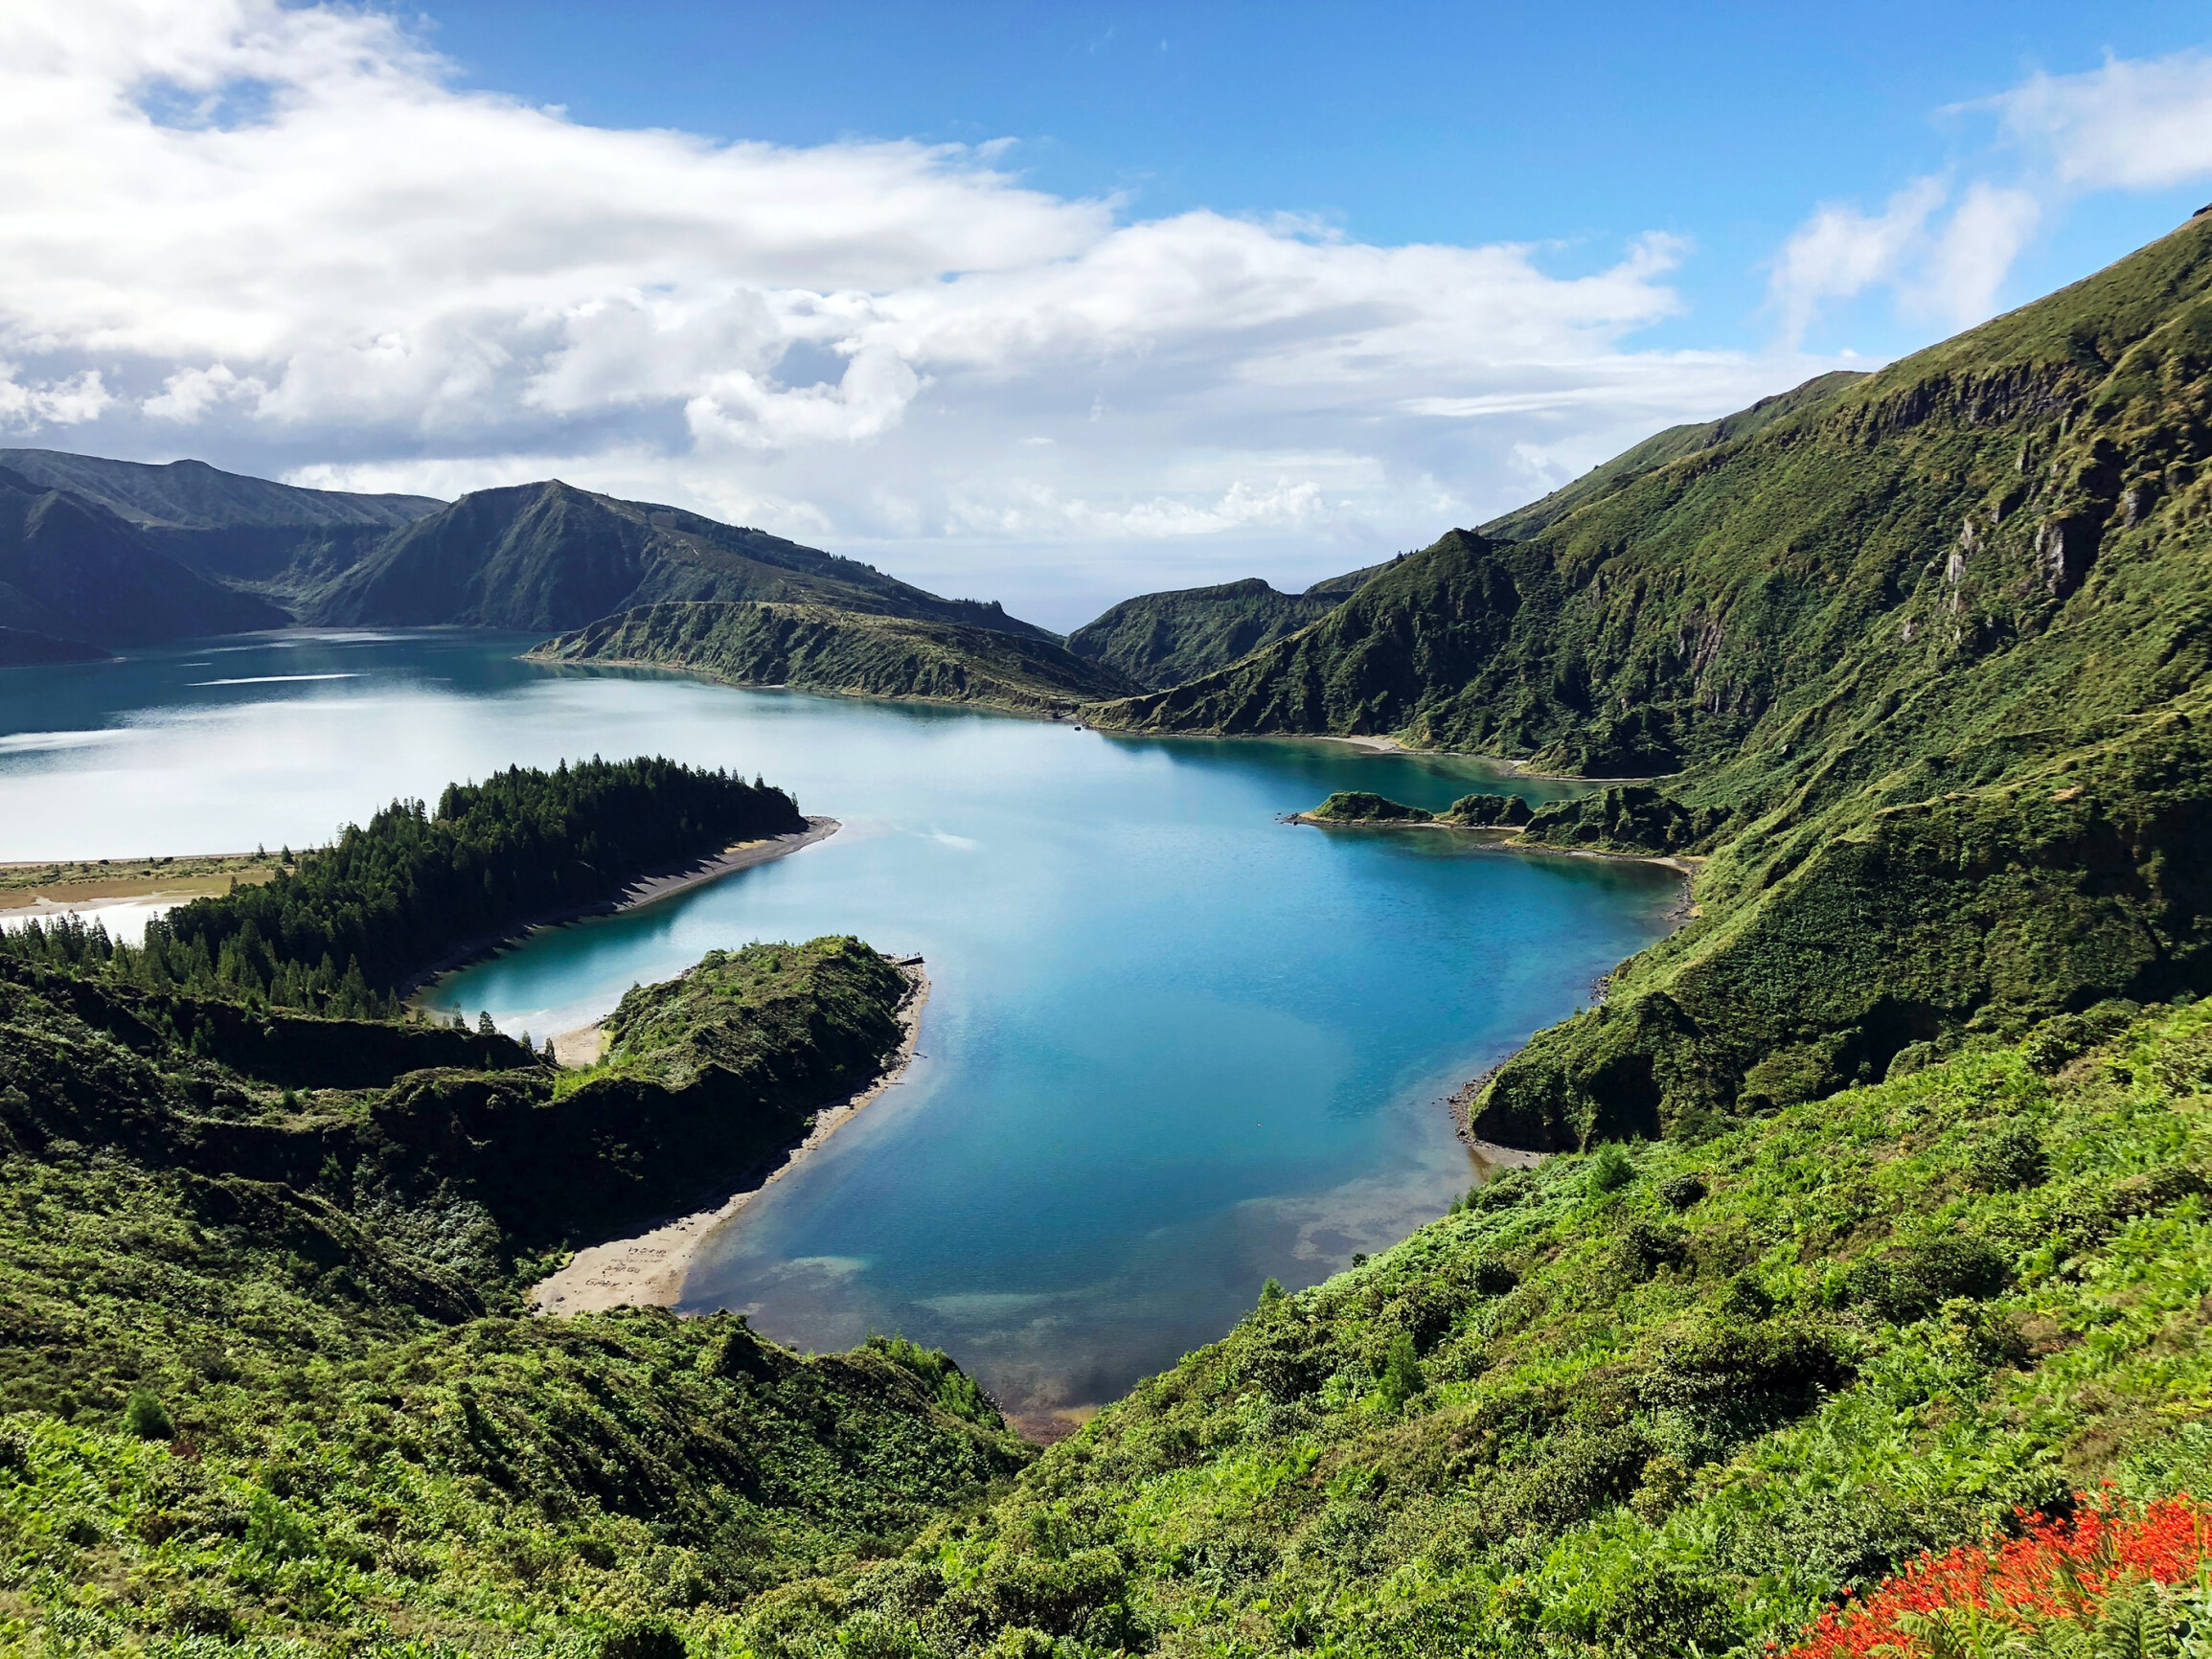 Guia de viagem: Pontos turísticos para visitar nos Açores